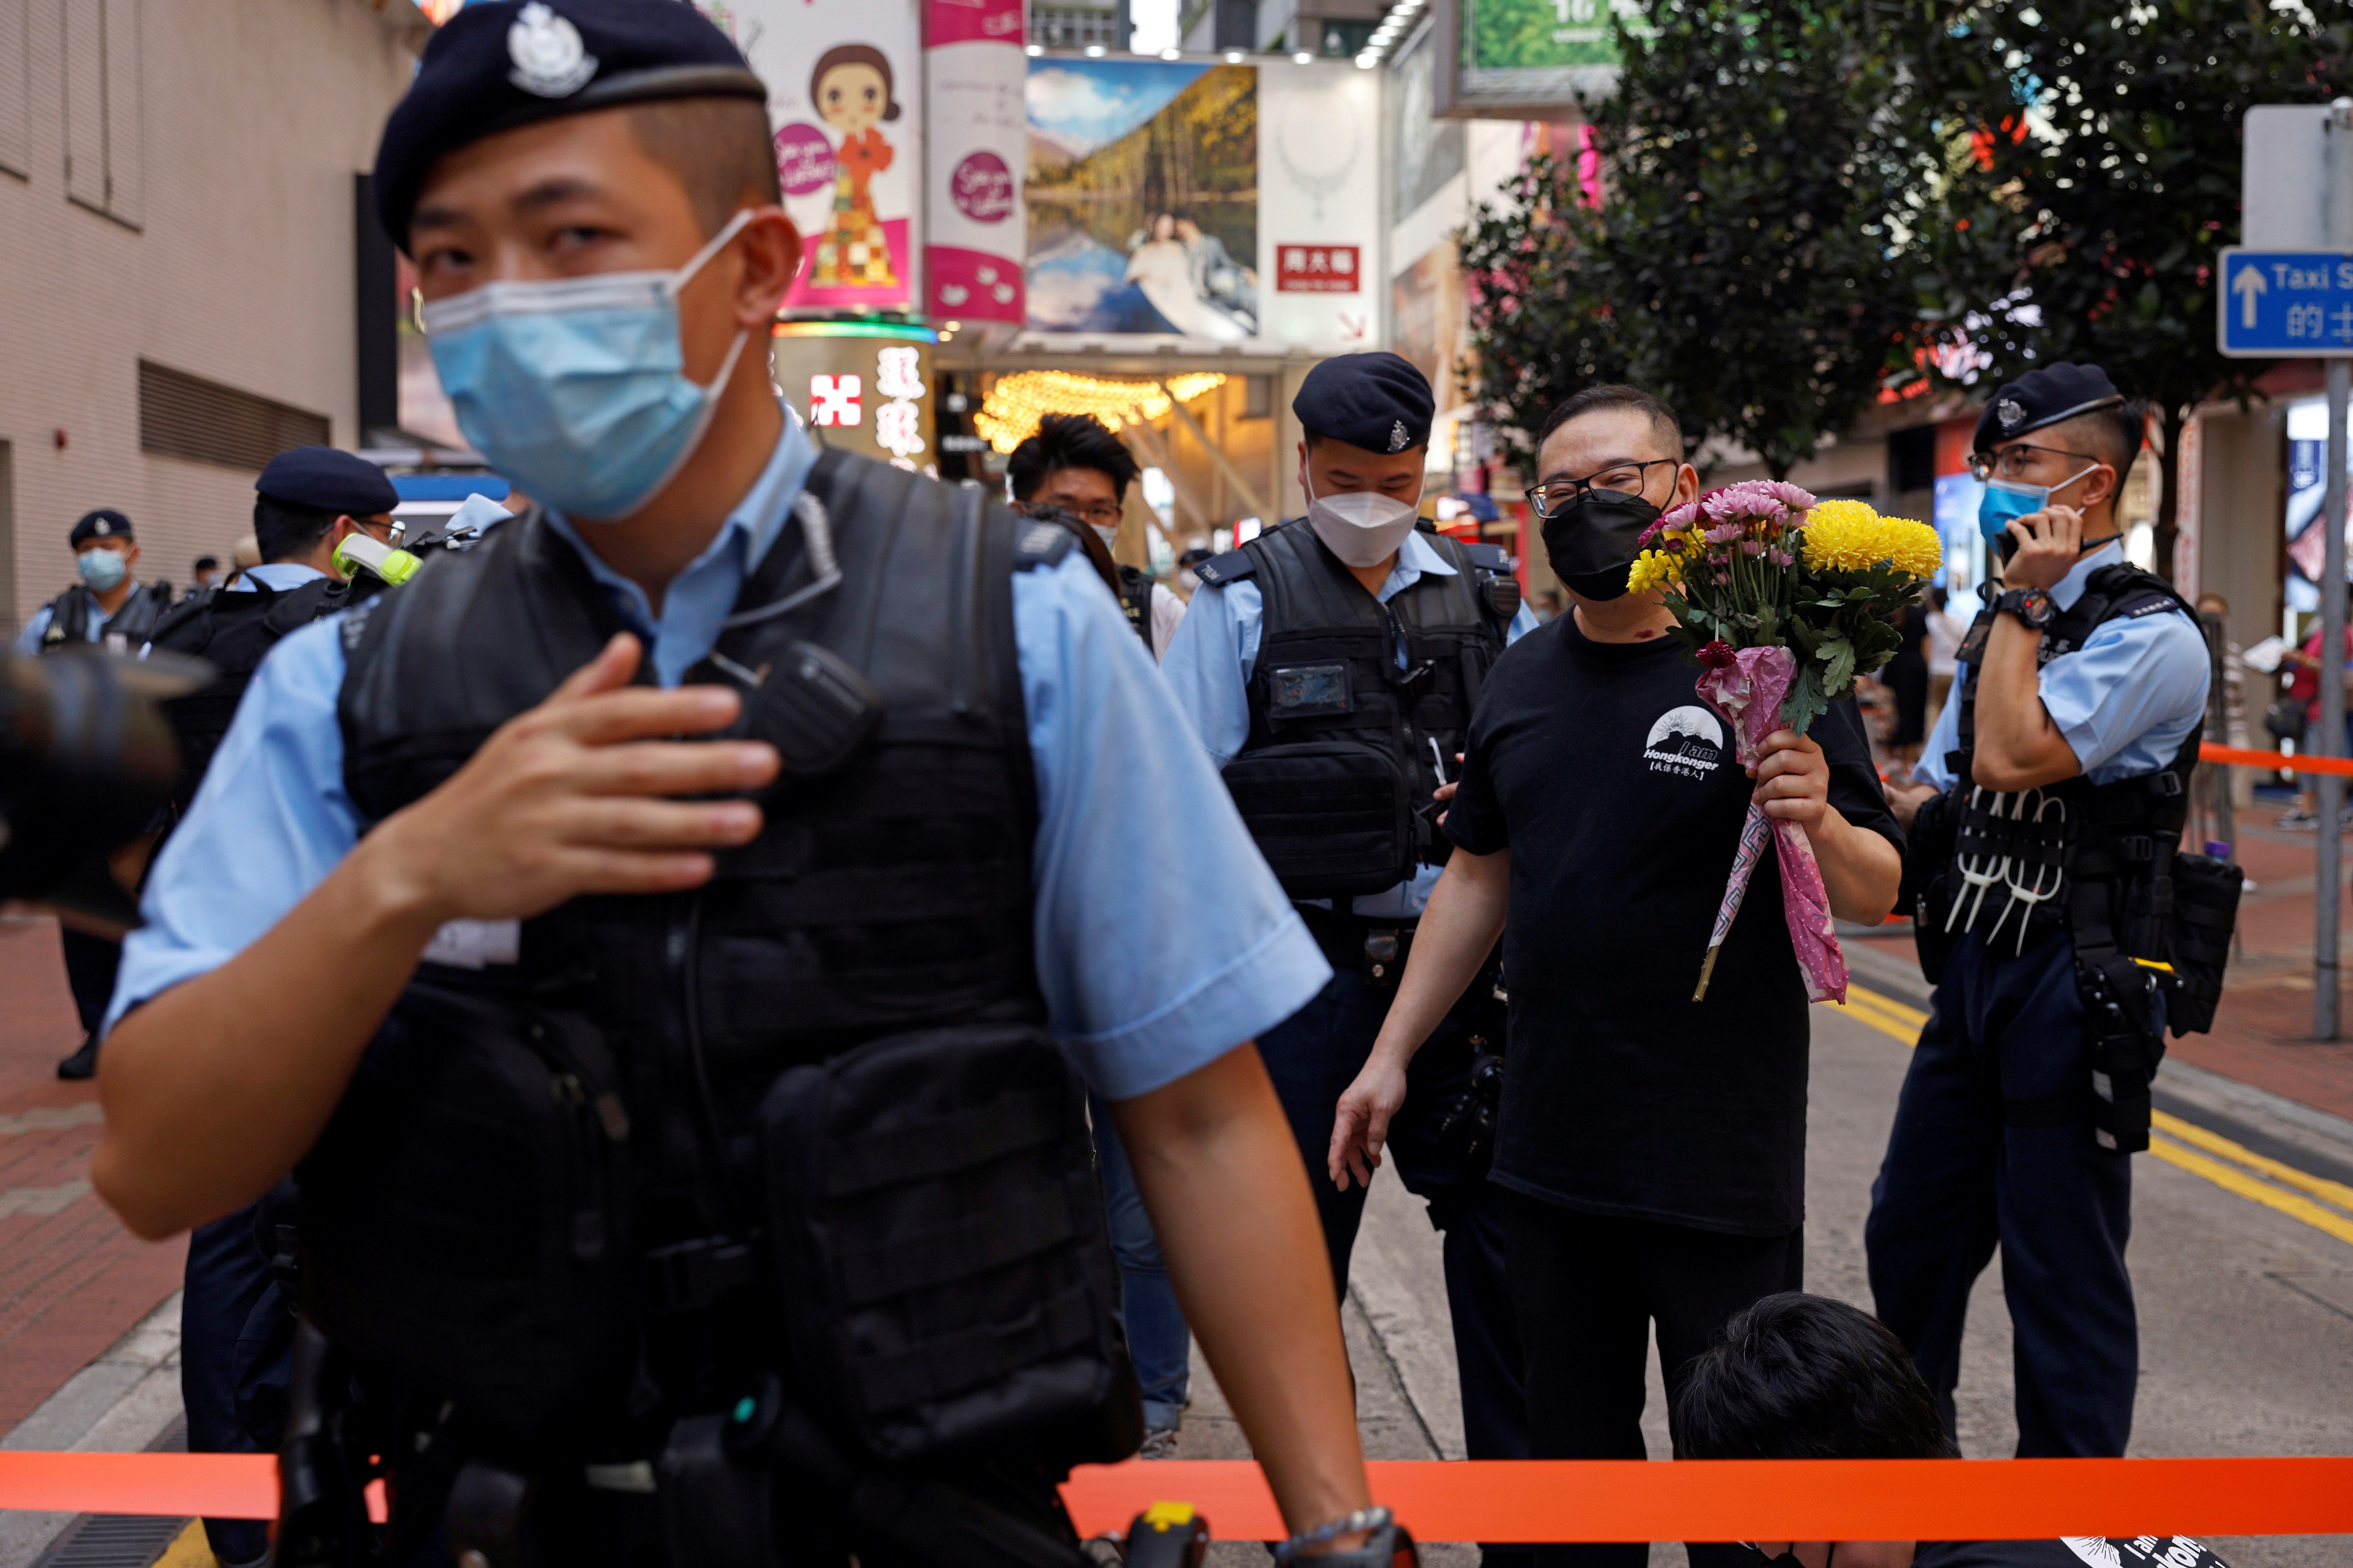 Hong Kong police arrest 9 suspected of terrorist activities